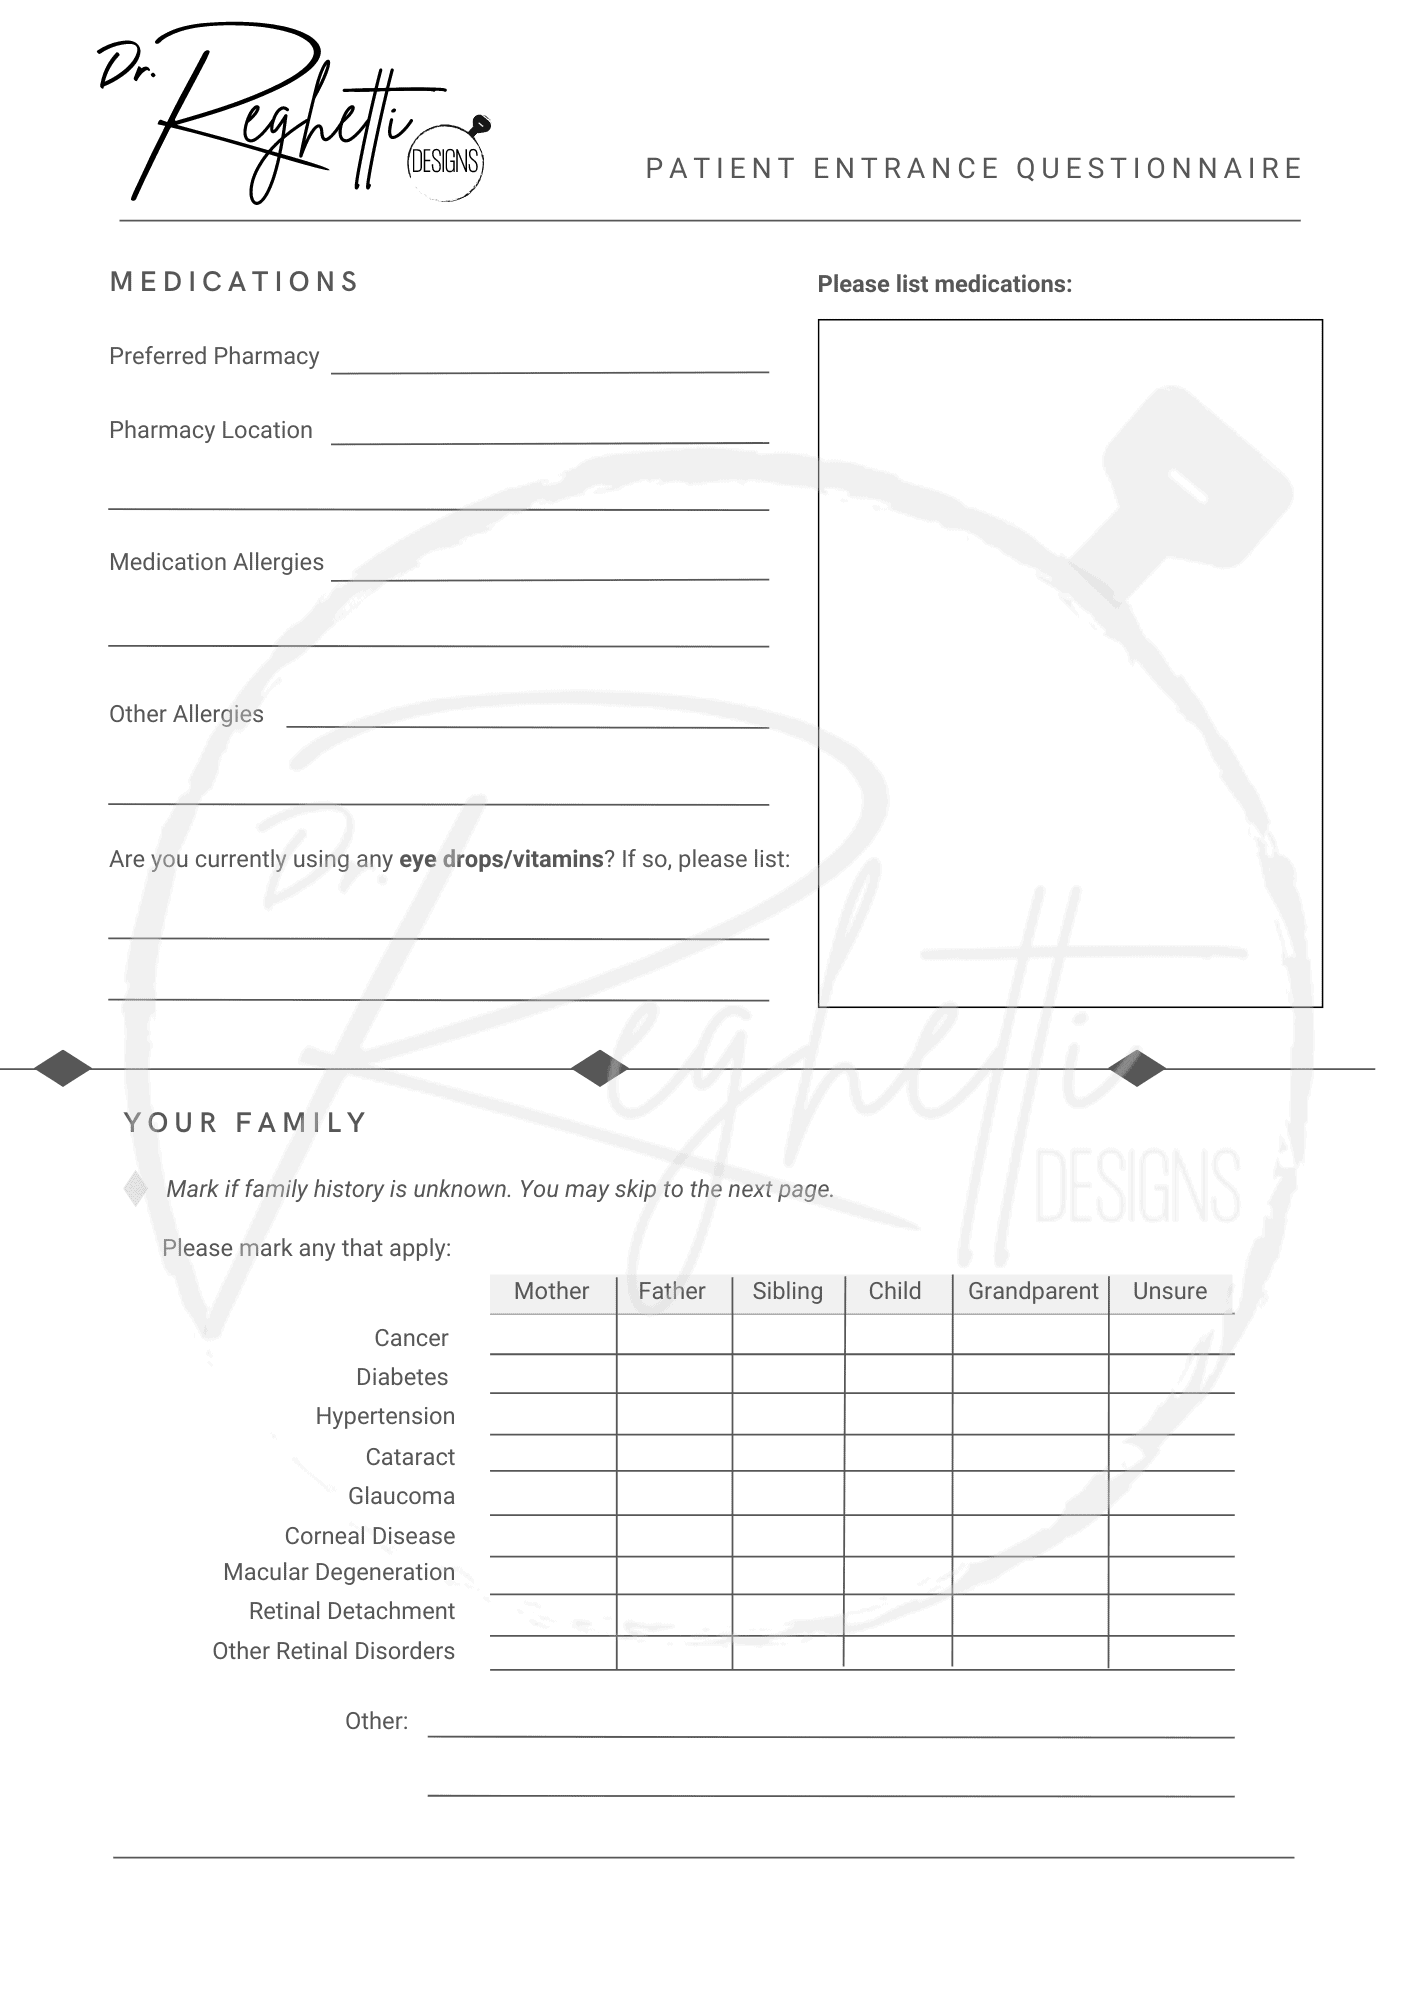 patient entrance questionnaire for optometrist fillable pdf